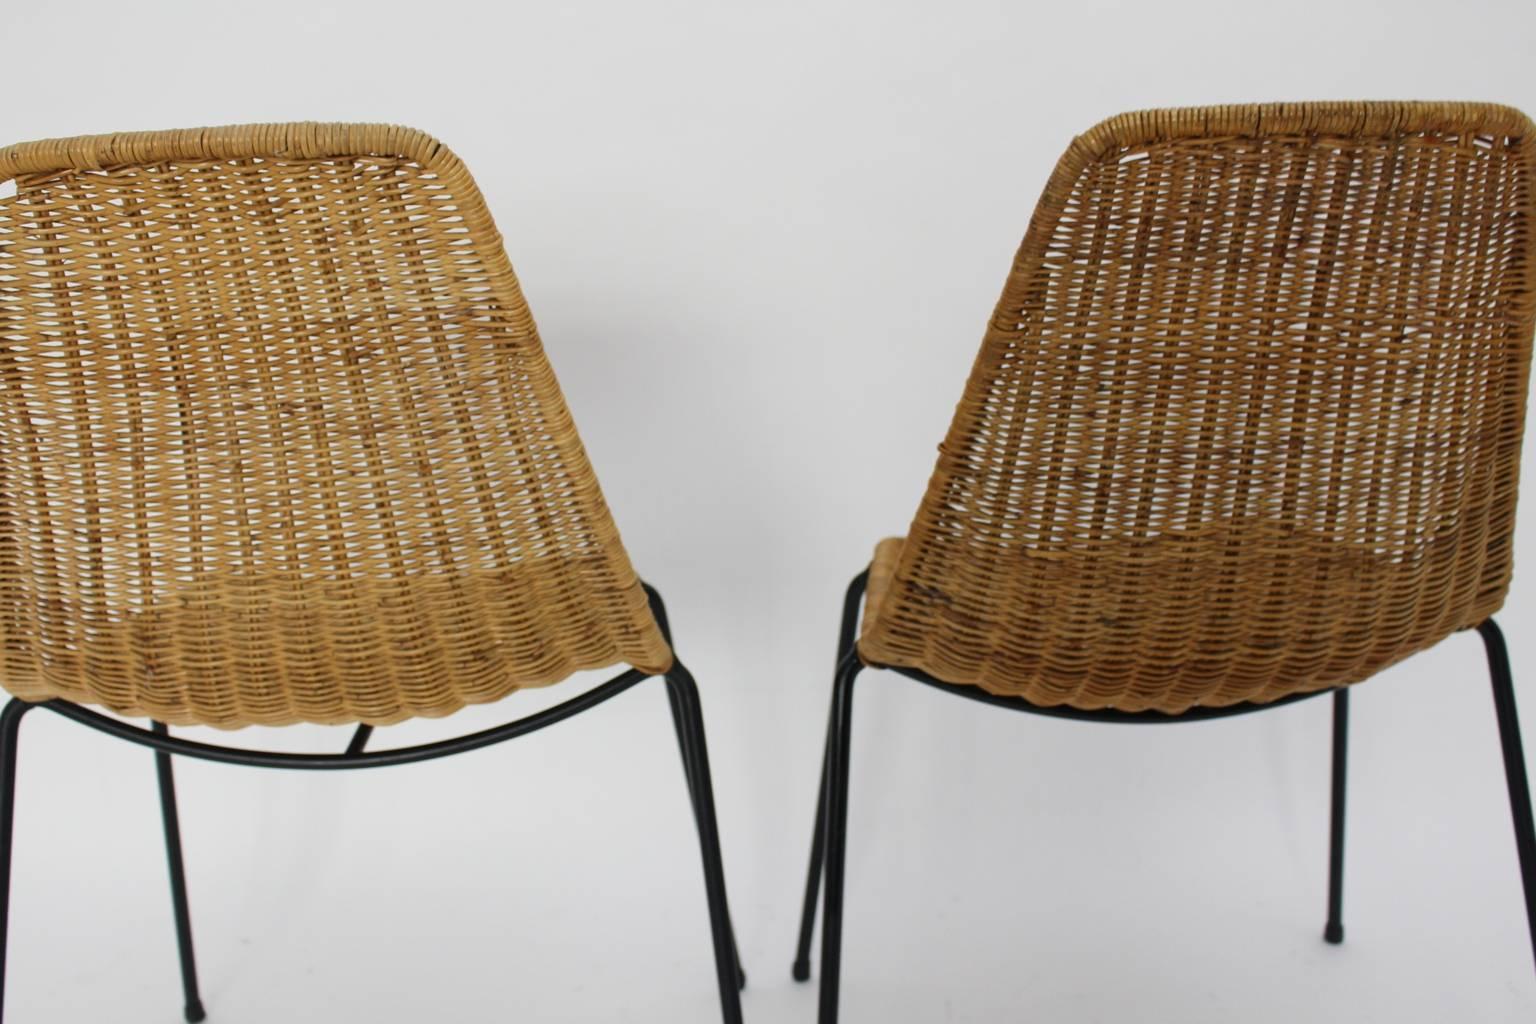 Metal Midcentury Modern Rattan Two Chairs Basket Gian Franco Legler, 1951, Switzerland